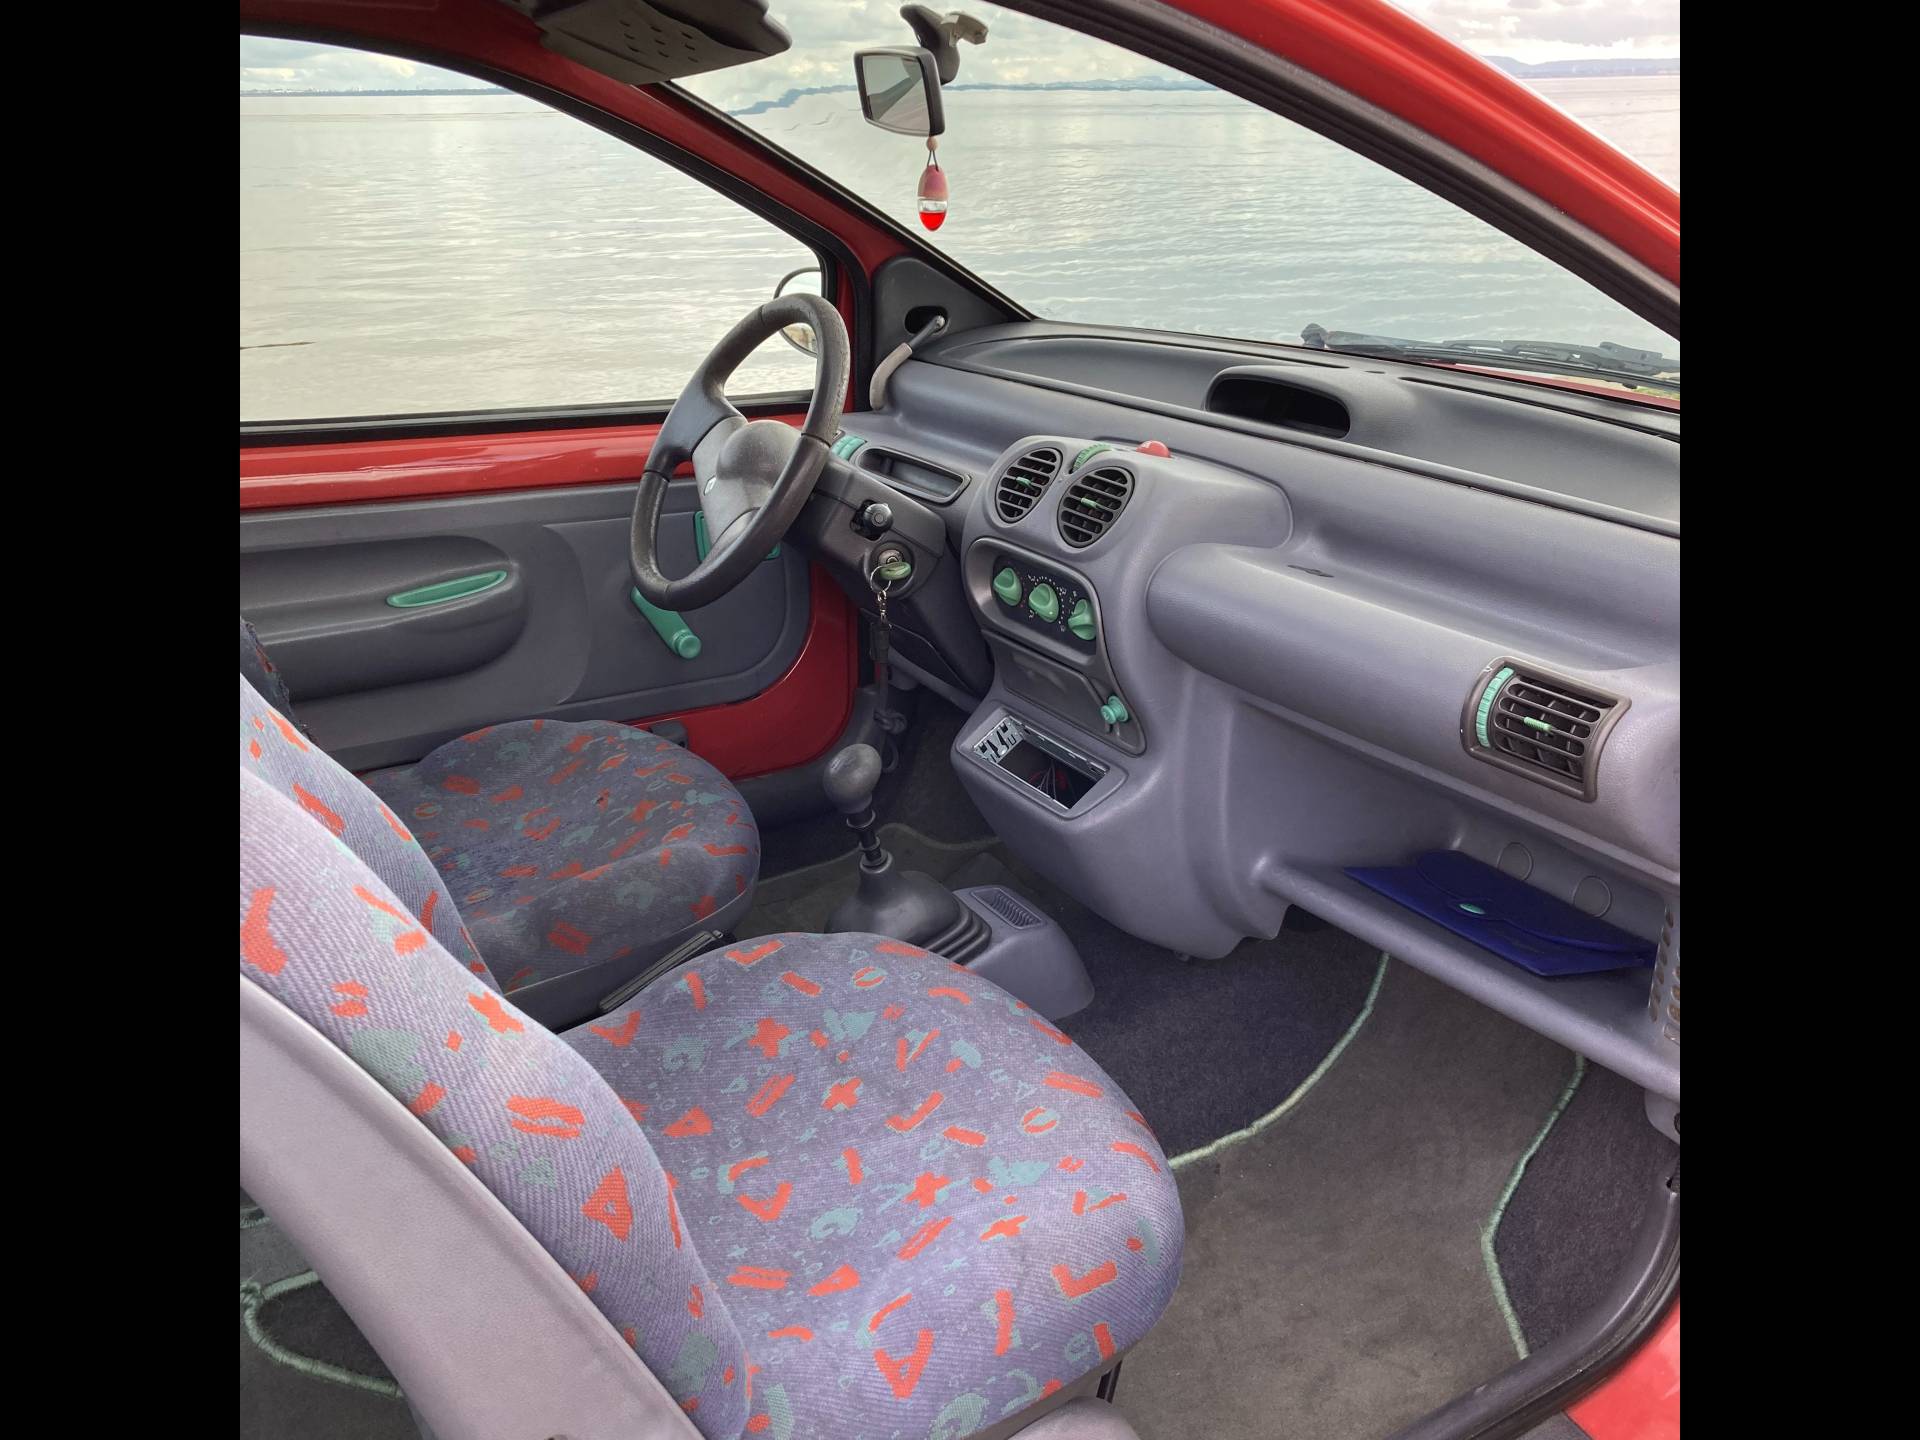 Indoor Autoschutzhülle passend für Renault Twingo 1993-present € 140